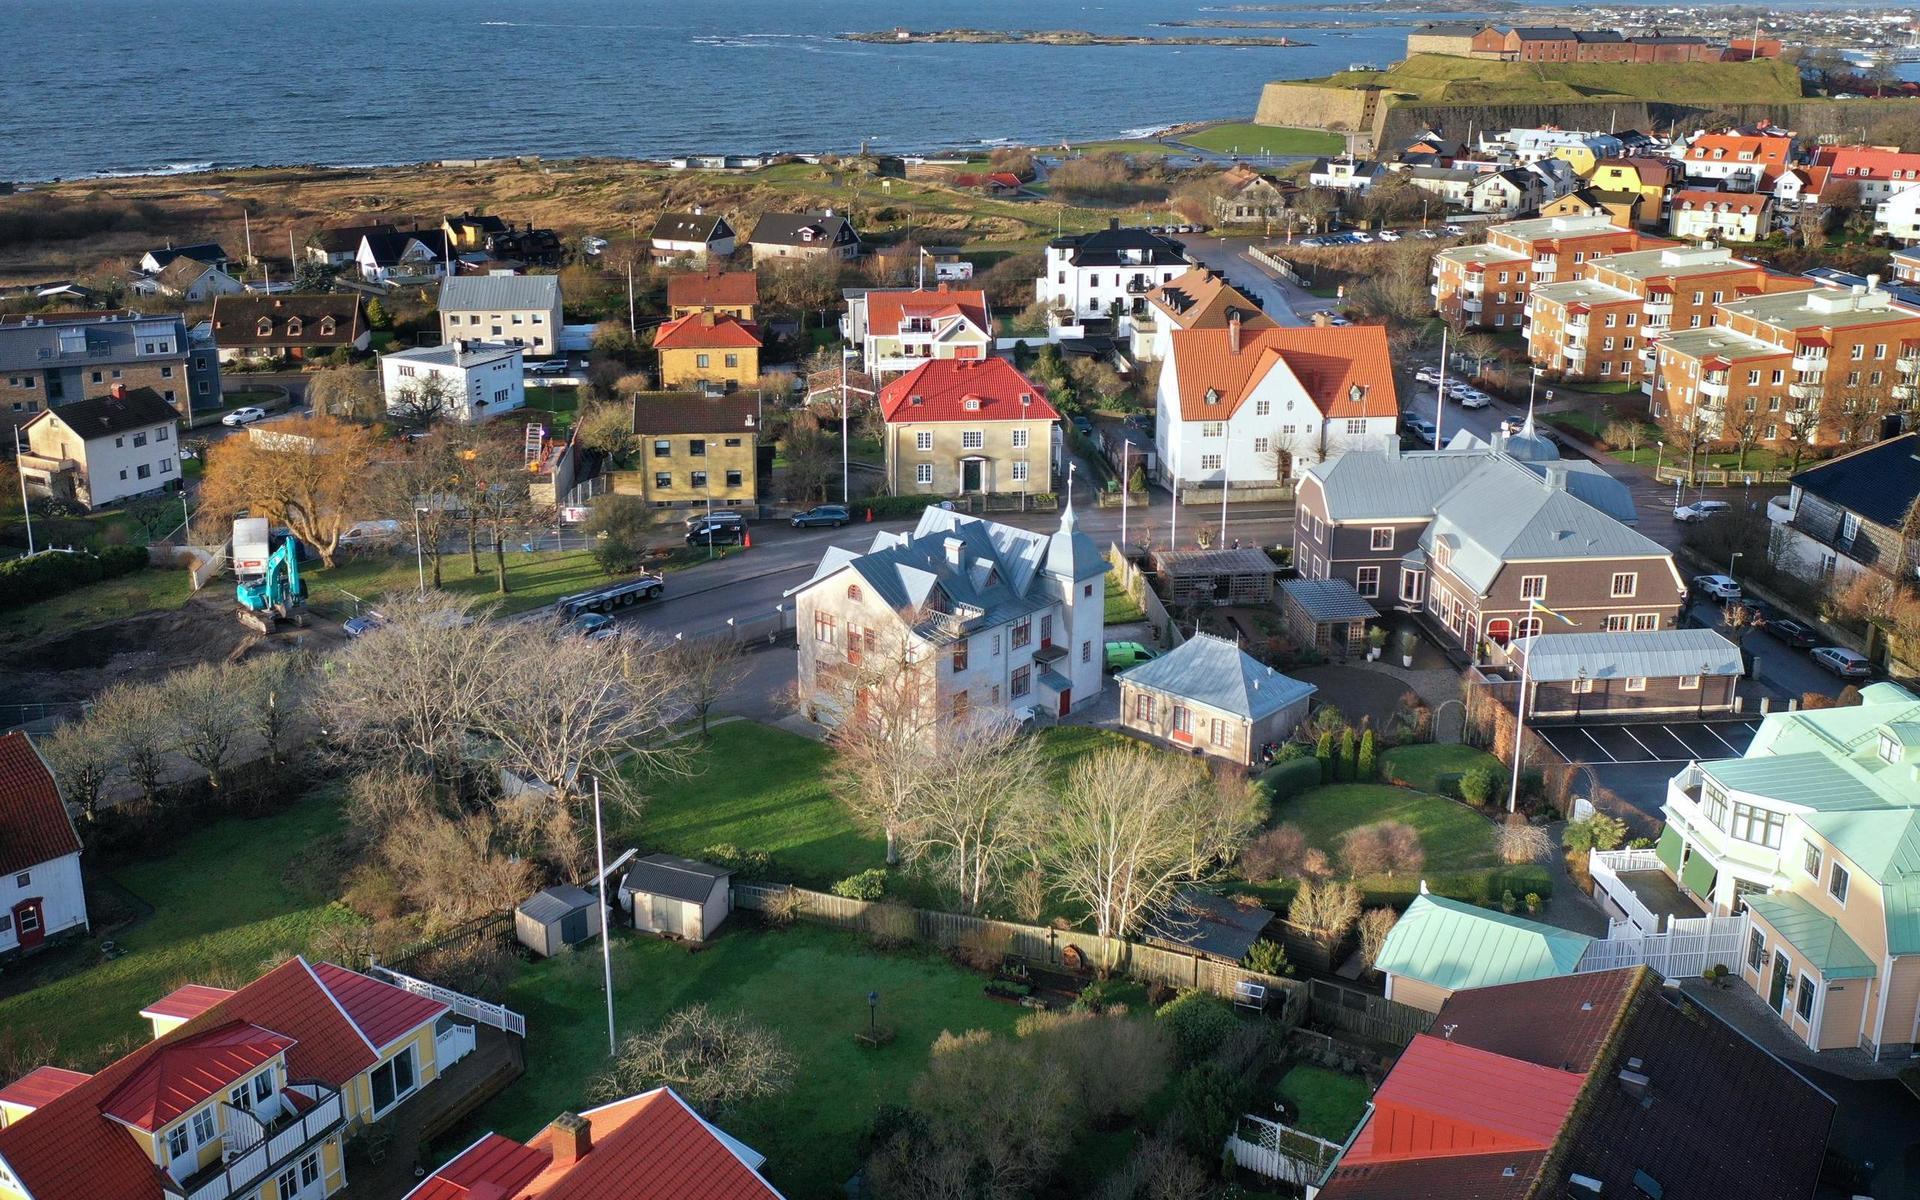 Havsborg ligger i utkanten av det område som brukar kallas Södra Villastaden där bland annat Villa Wäring, Heijlska Villan och Jobsons Villa ingår.